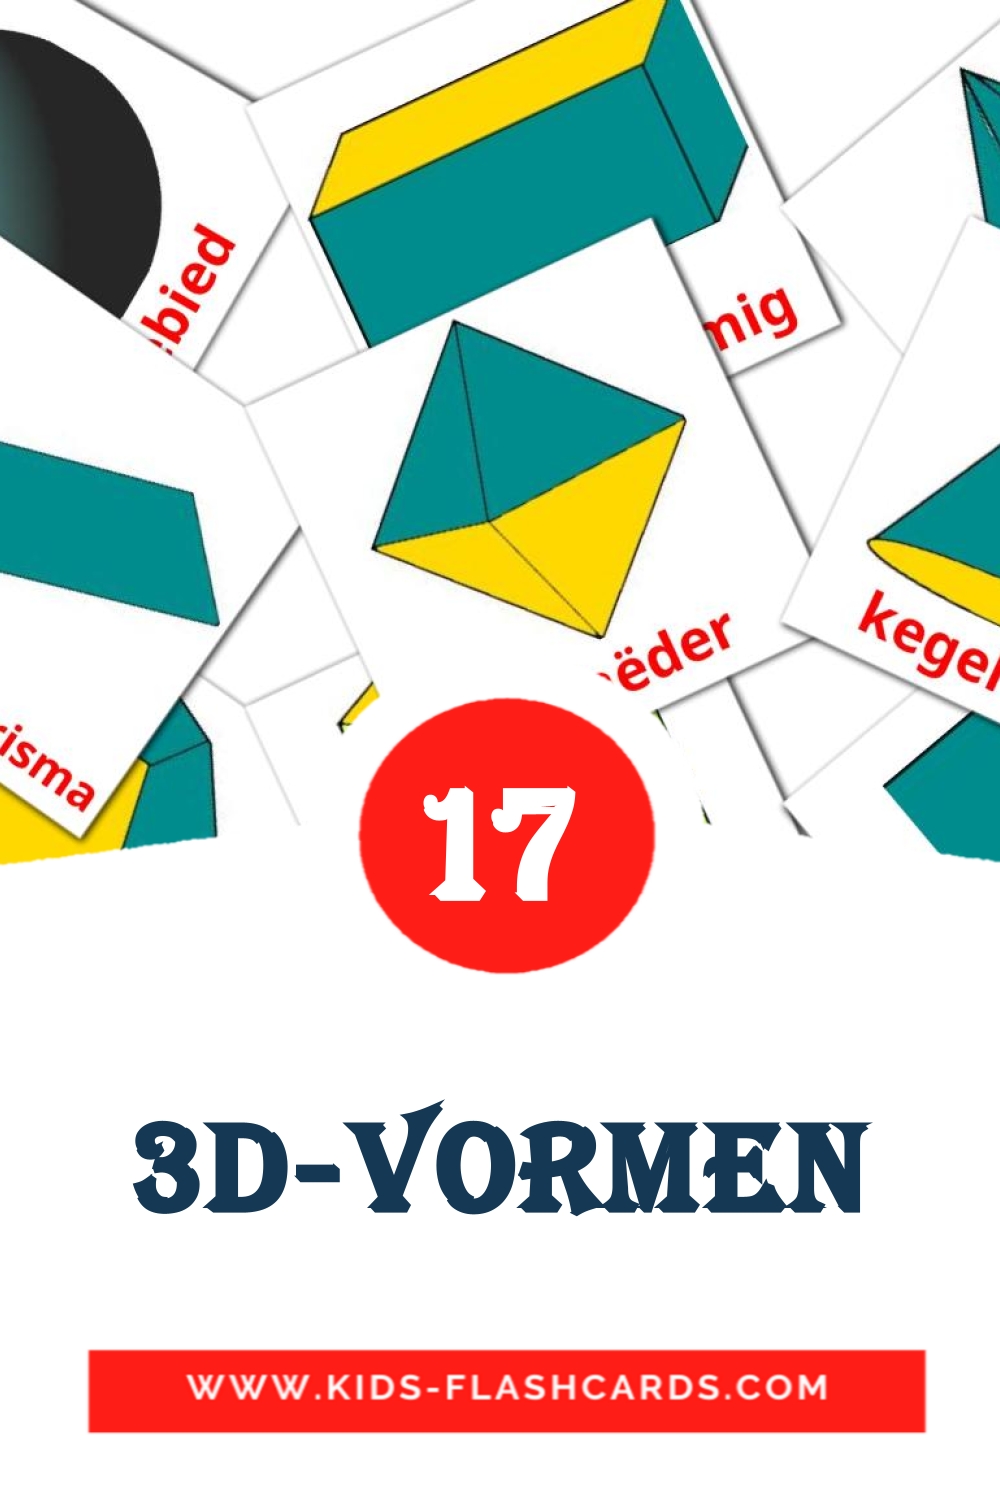 17 carte illustrate di 3D-vormen per la scuola materna in olandese